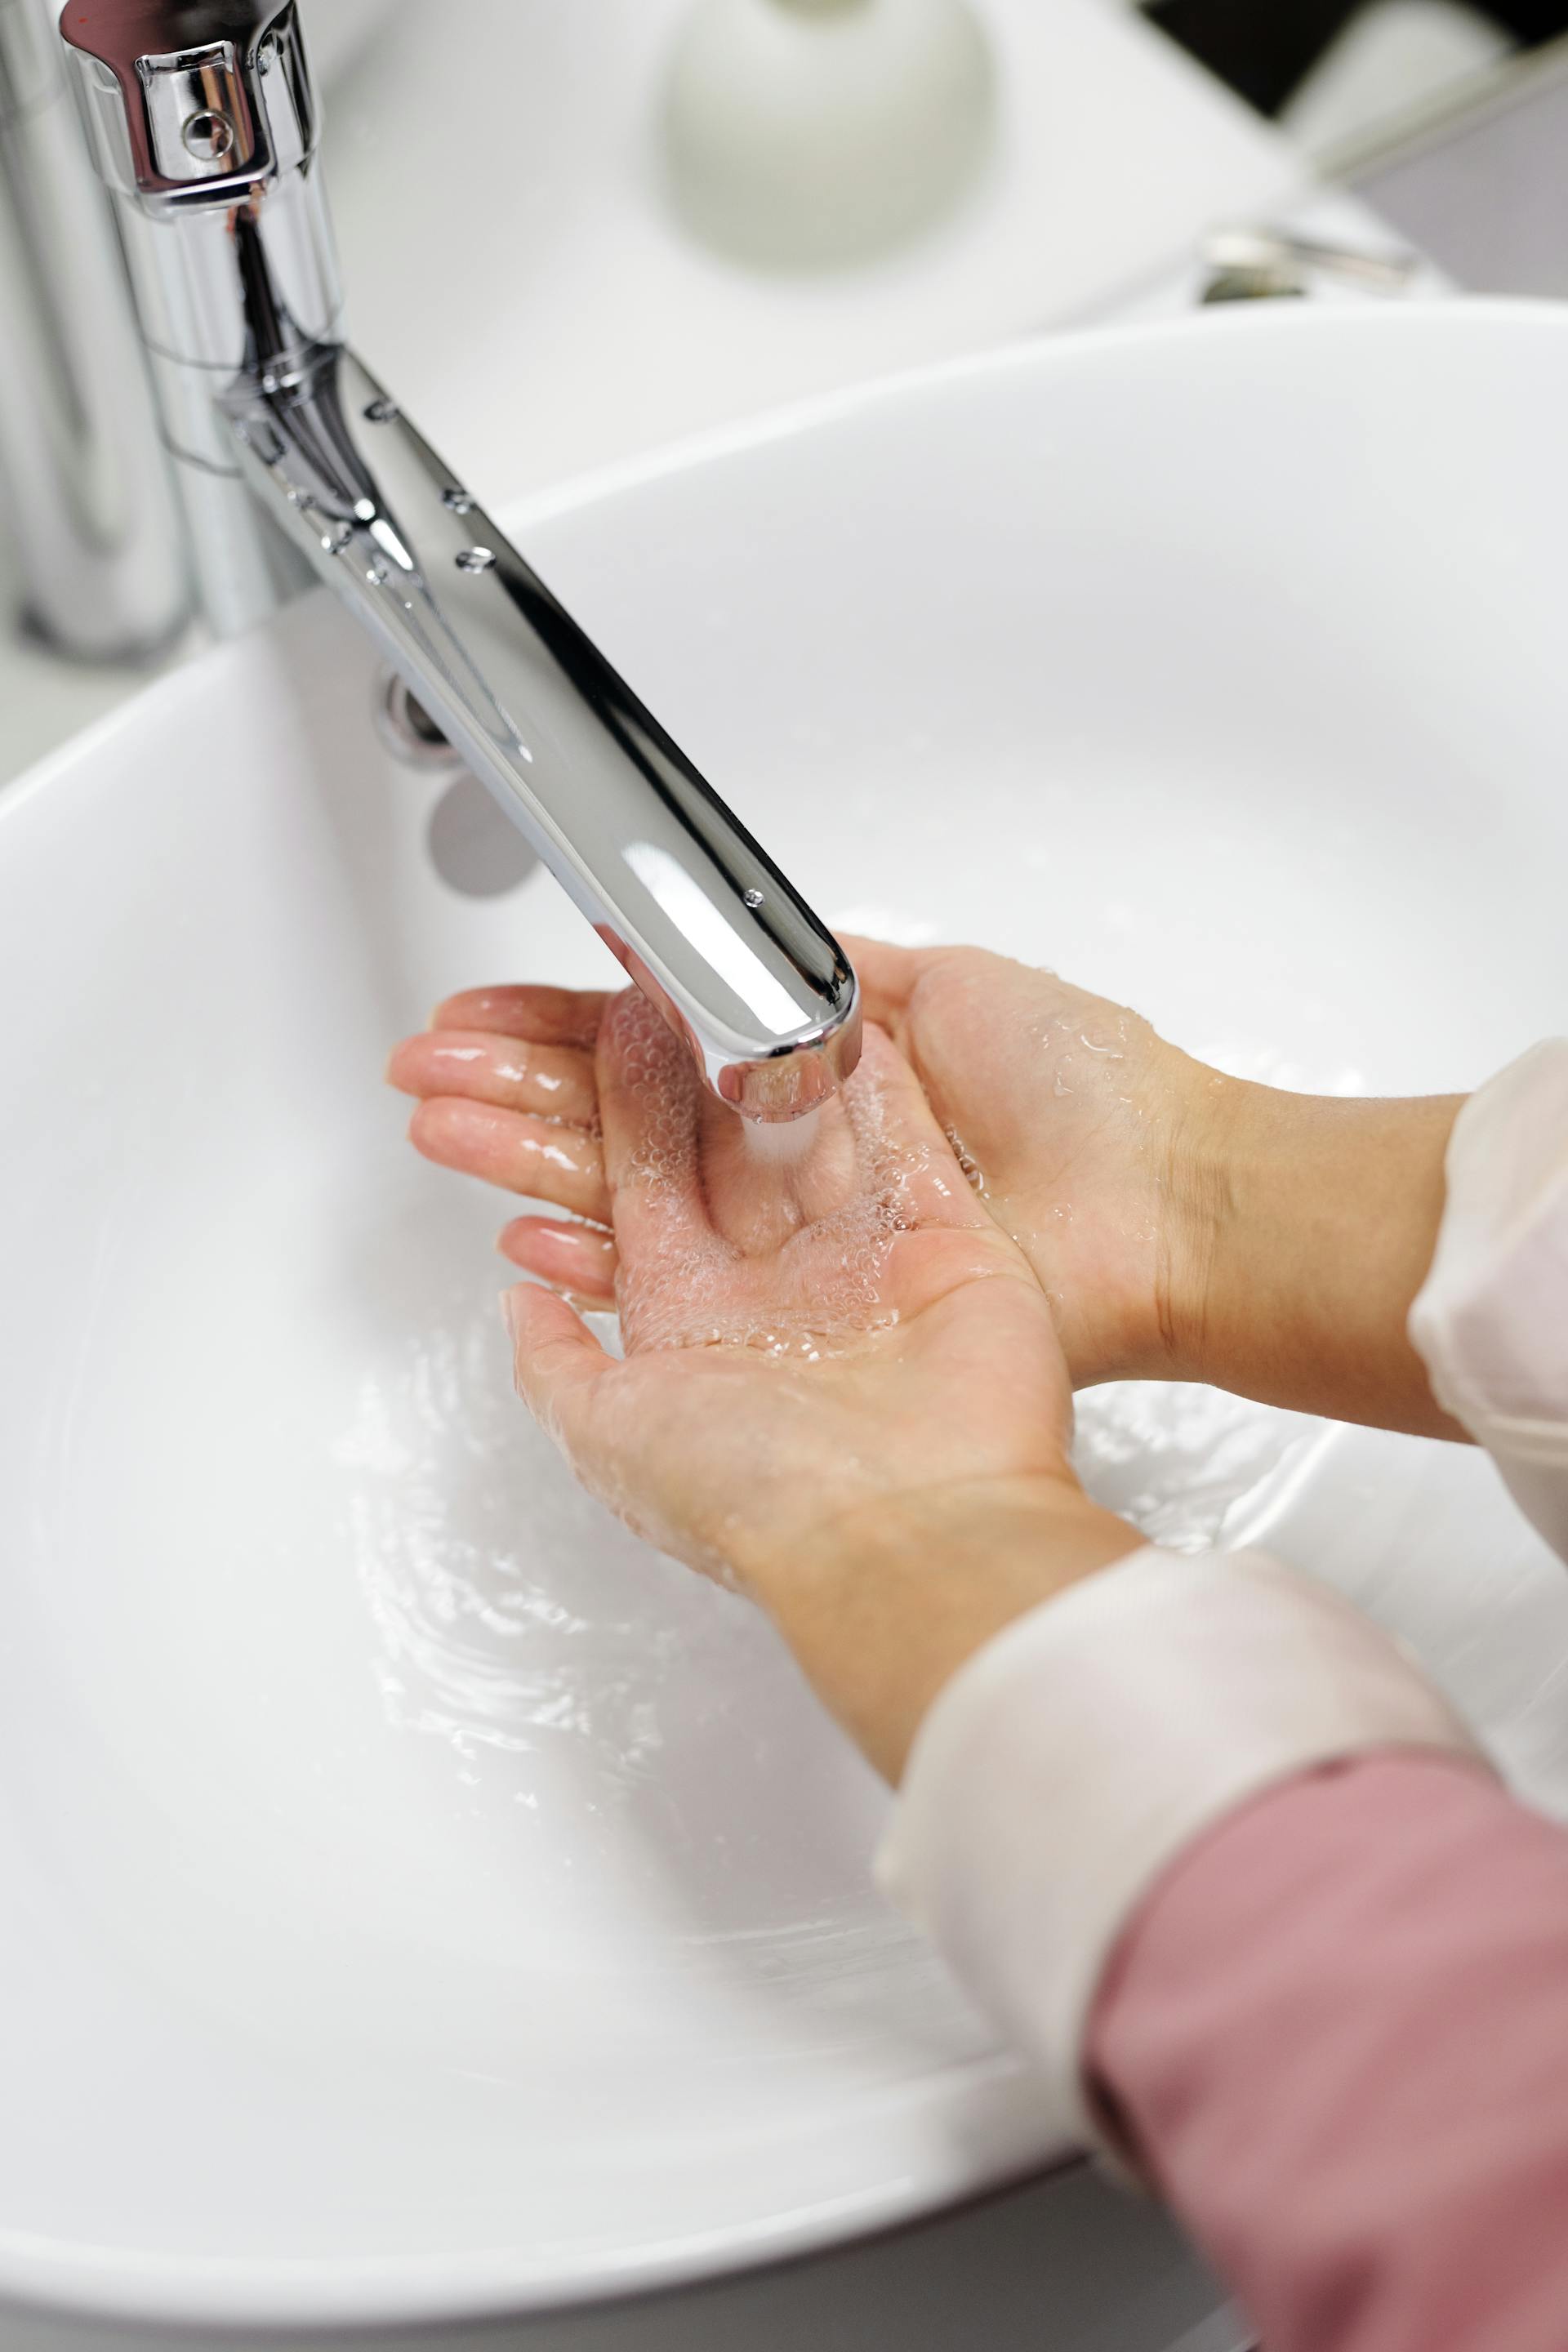 Les mains sous un robinet qui coule | Source : Pexels